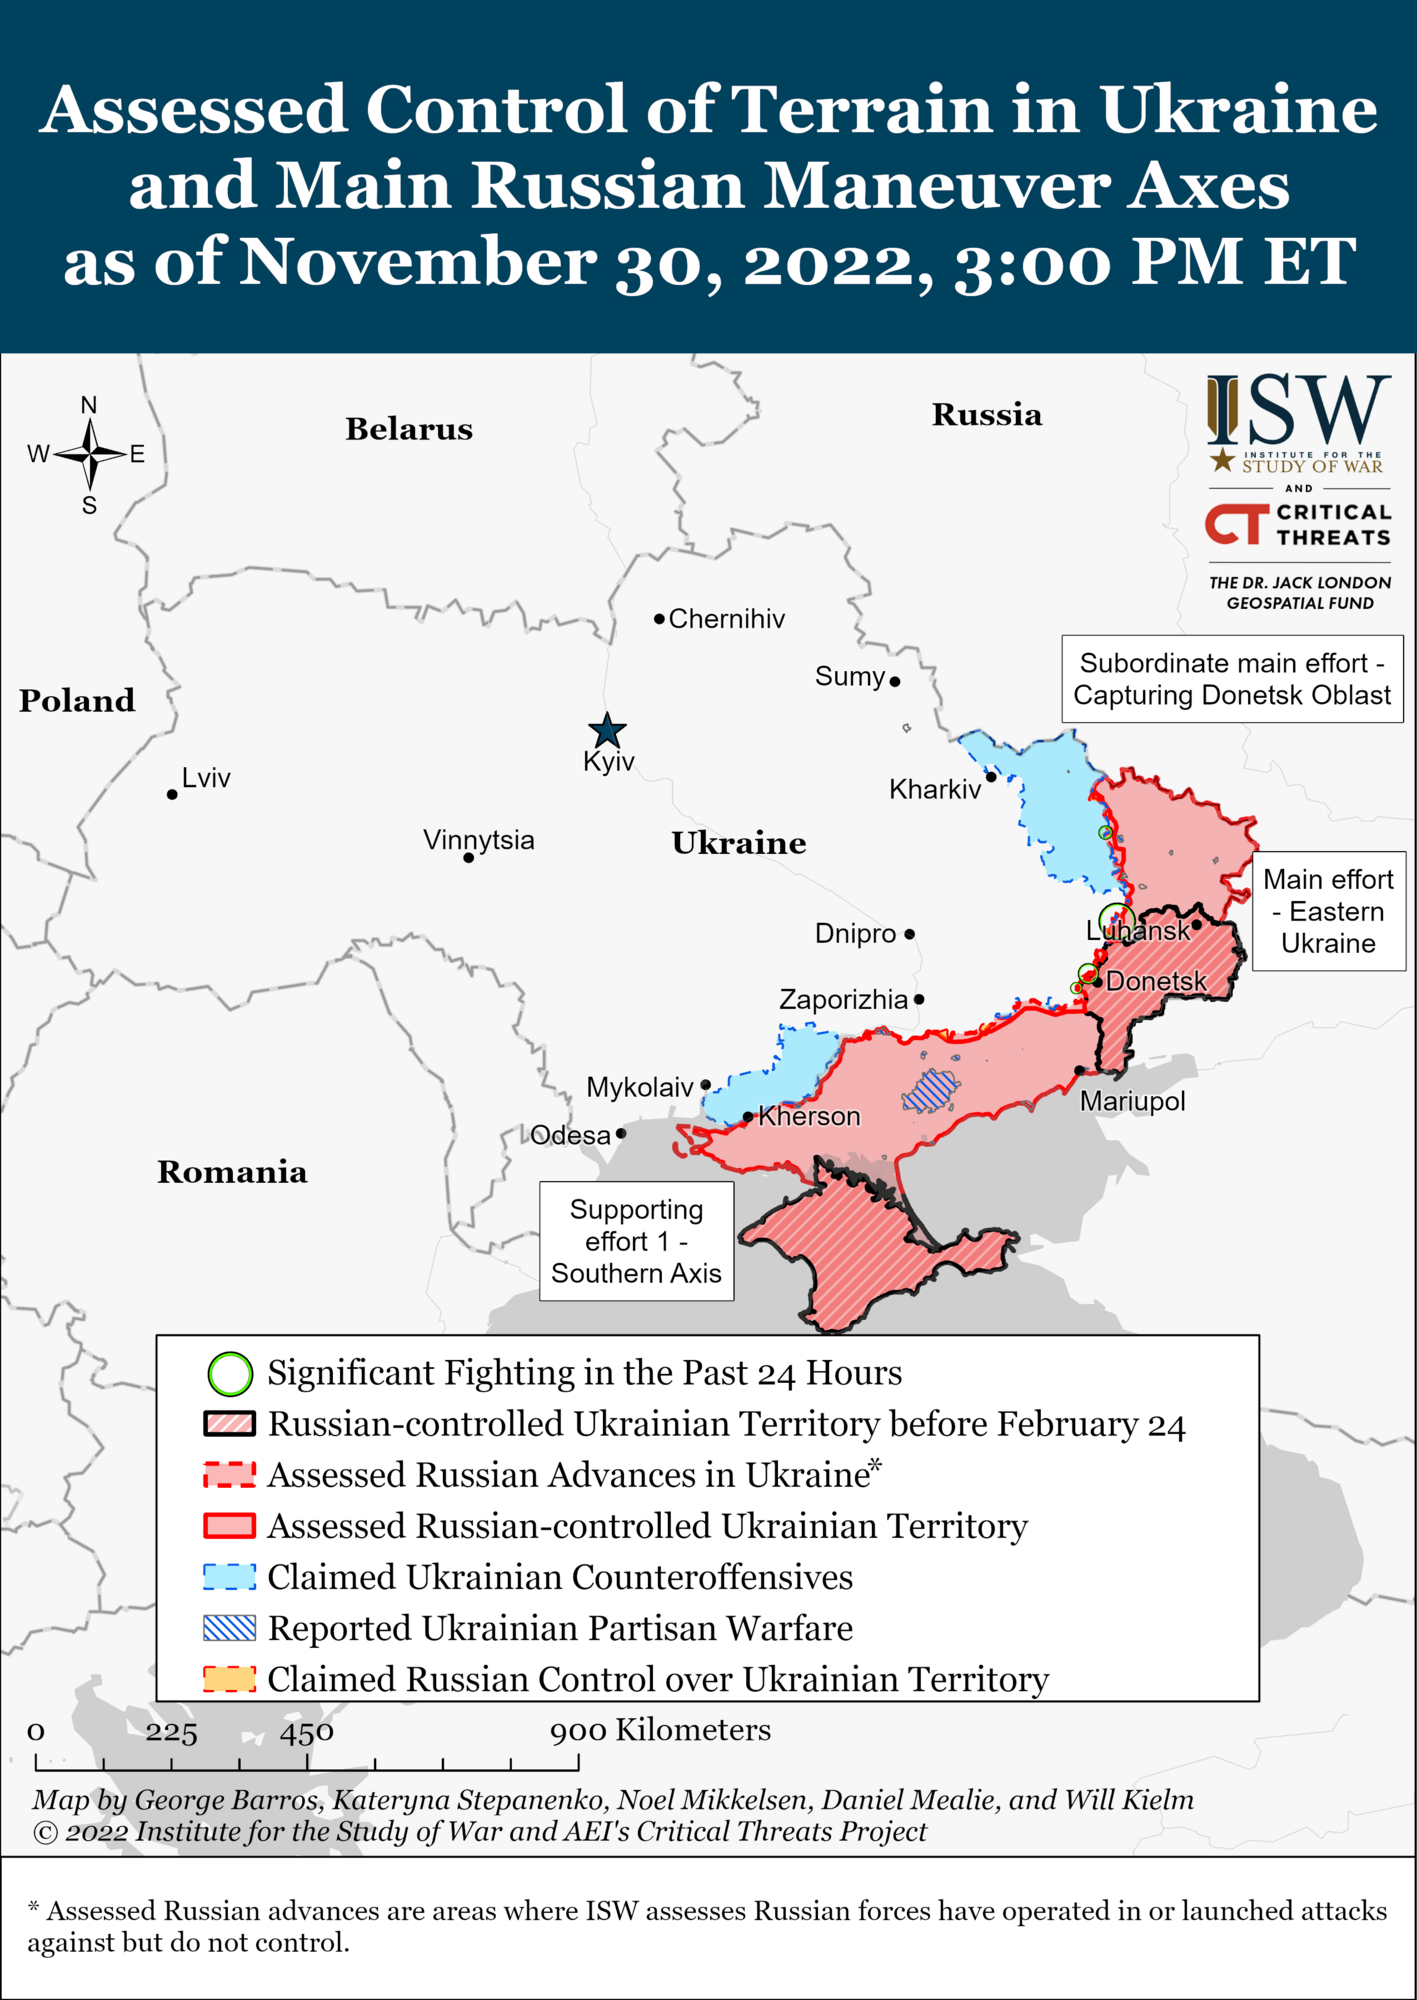 Кремль делает ставку на паузу в войне, но ВСУ не прекратят операции: что ждет Украину этой зимой. Главные прогнозы